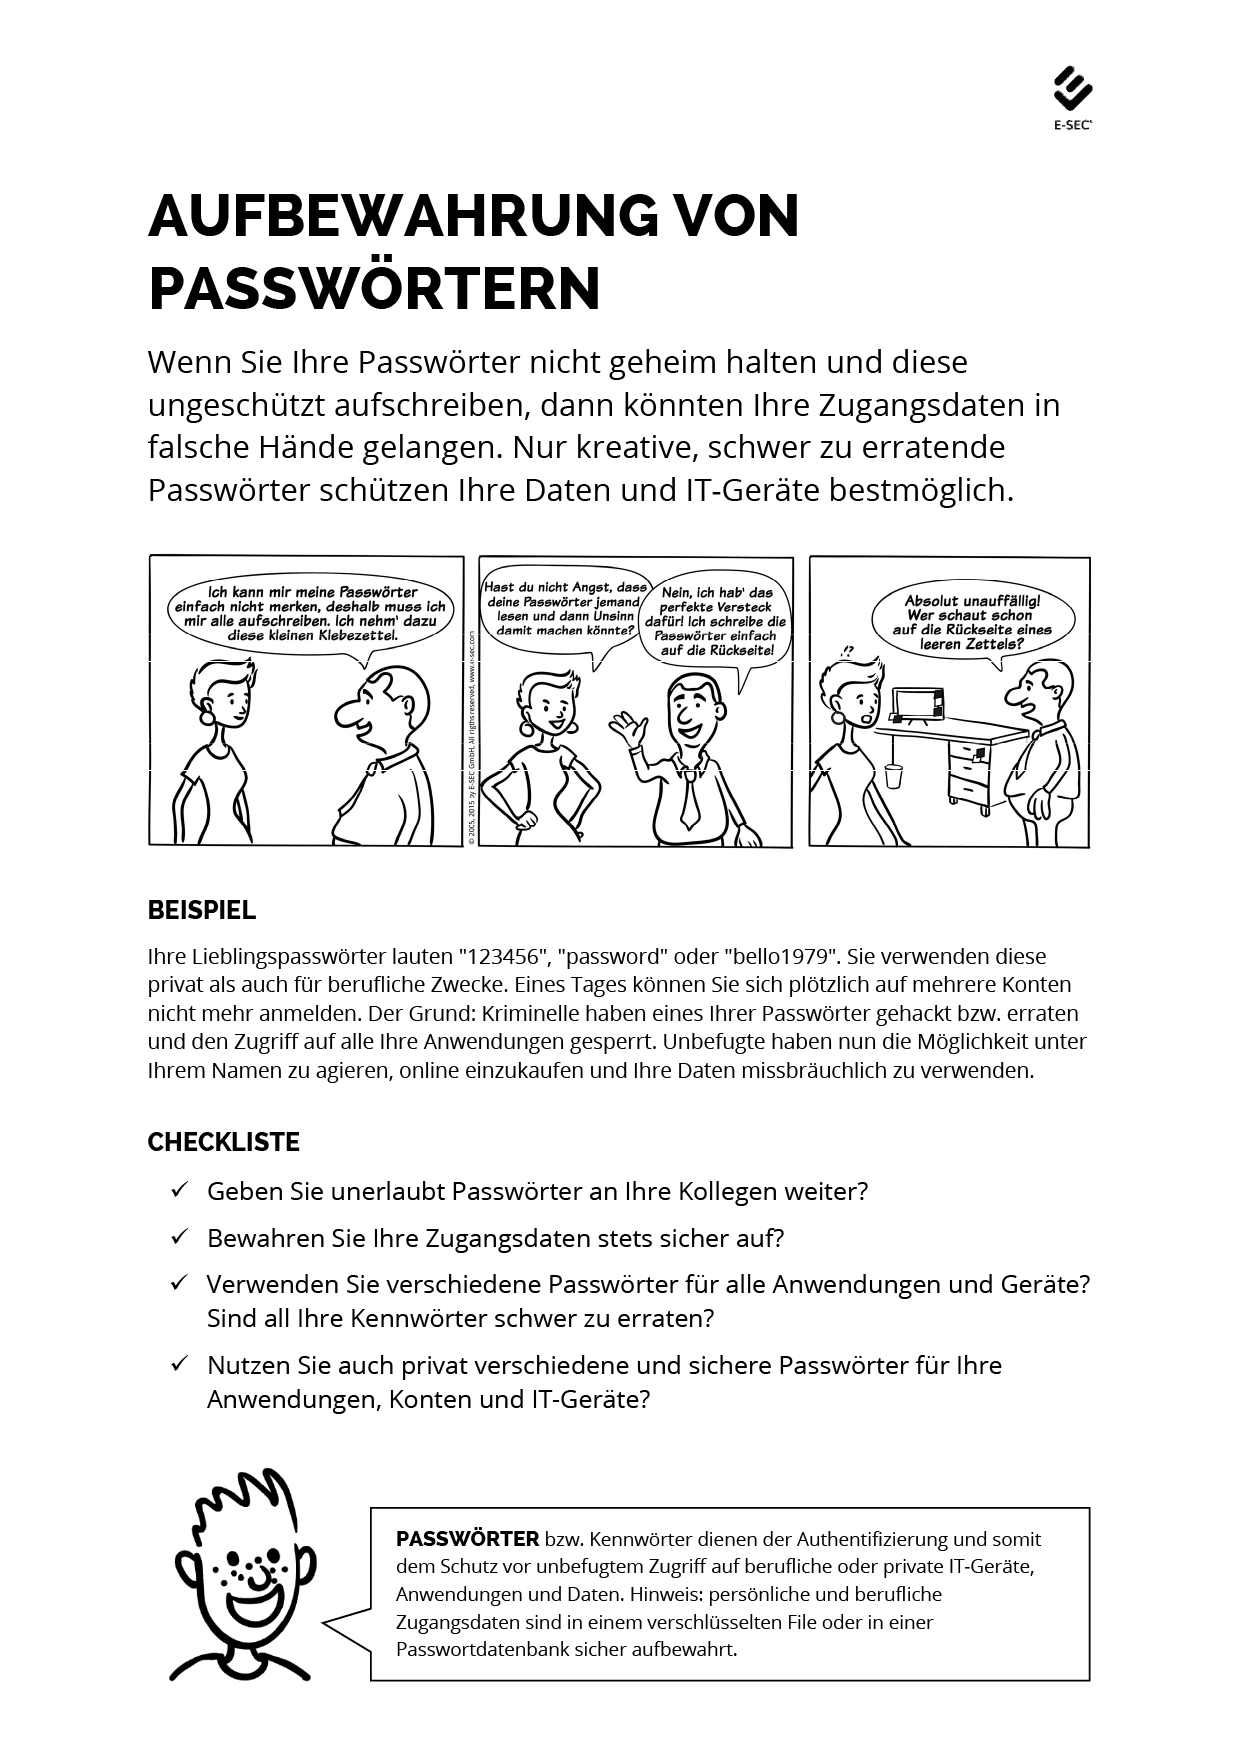 Aufbewahrung von Passwörtern